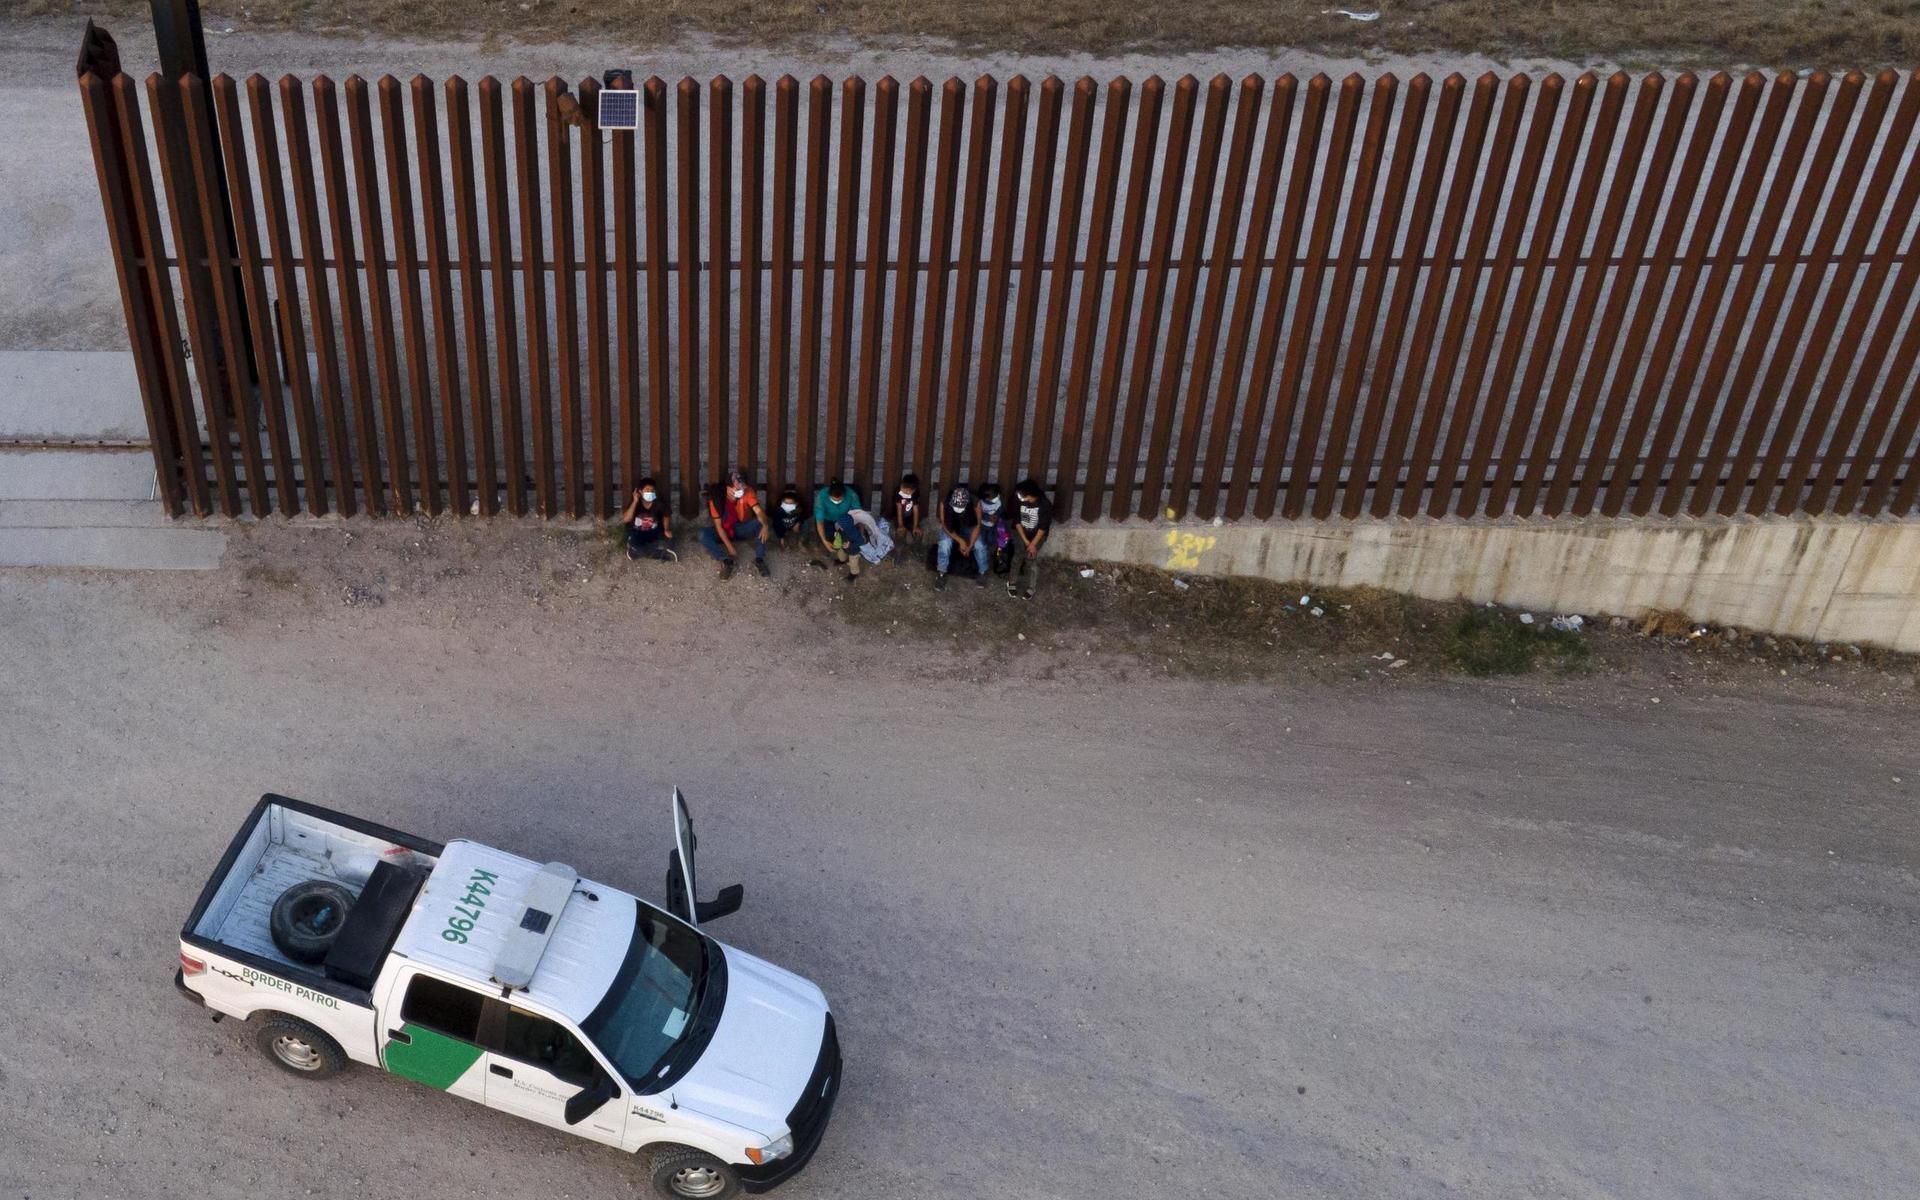 Både ensamma barn och familjer stoppas av gränspoliser när de försöker ta sig till USA. 